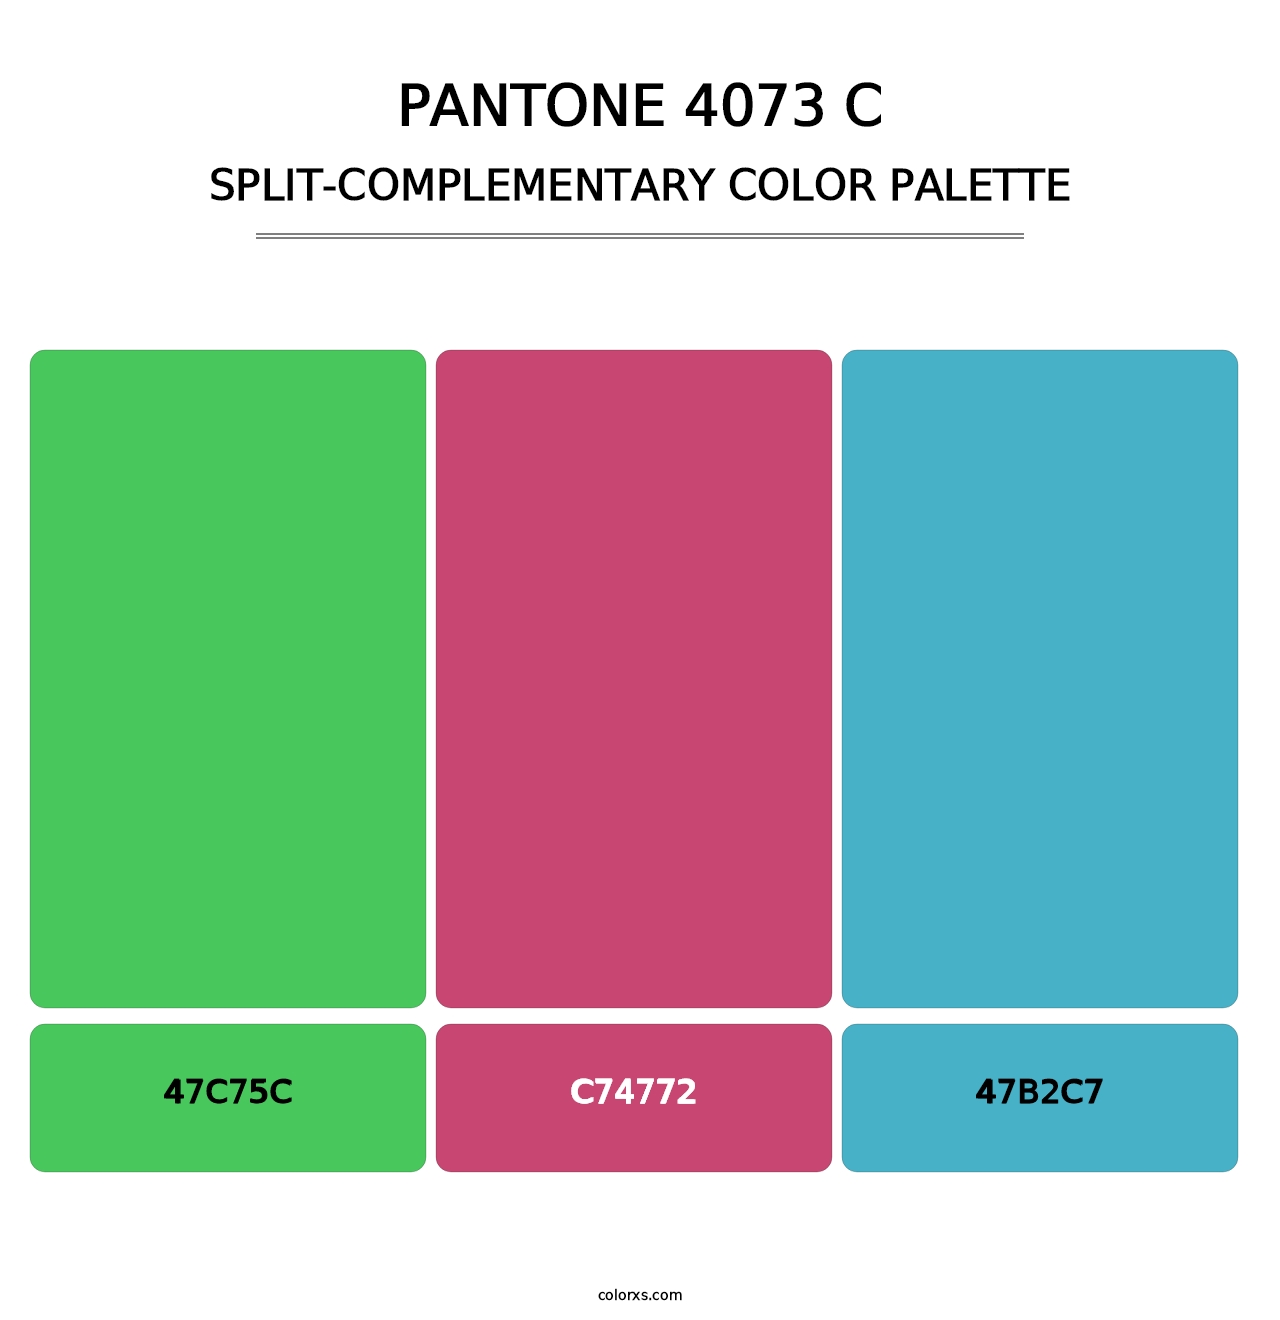 PANTONE 4073 C - Split-Complementary Color Palette